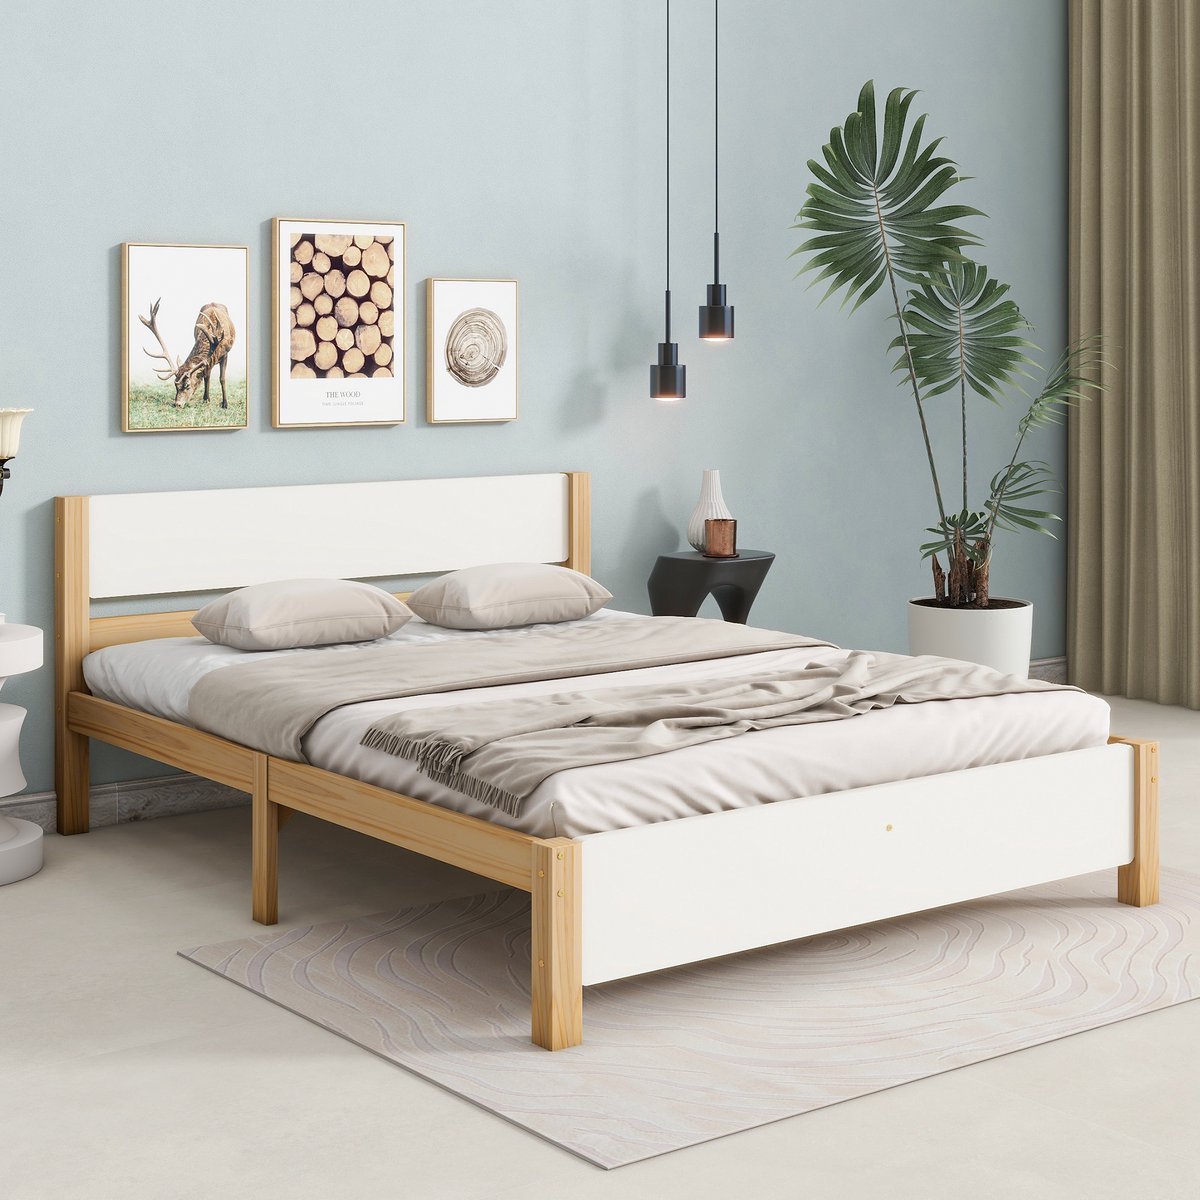 Jeugdbed Tweepersoons houten bed - grenenhouten frame met middenvoet - volwassenenbed met hoofd- en voeteinde van MDF - wit + naturel 140x200 cm